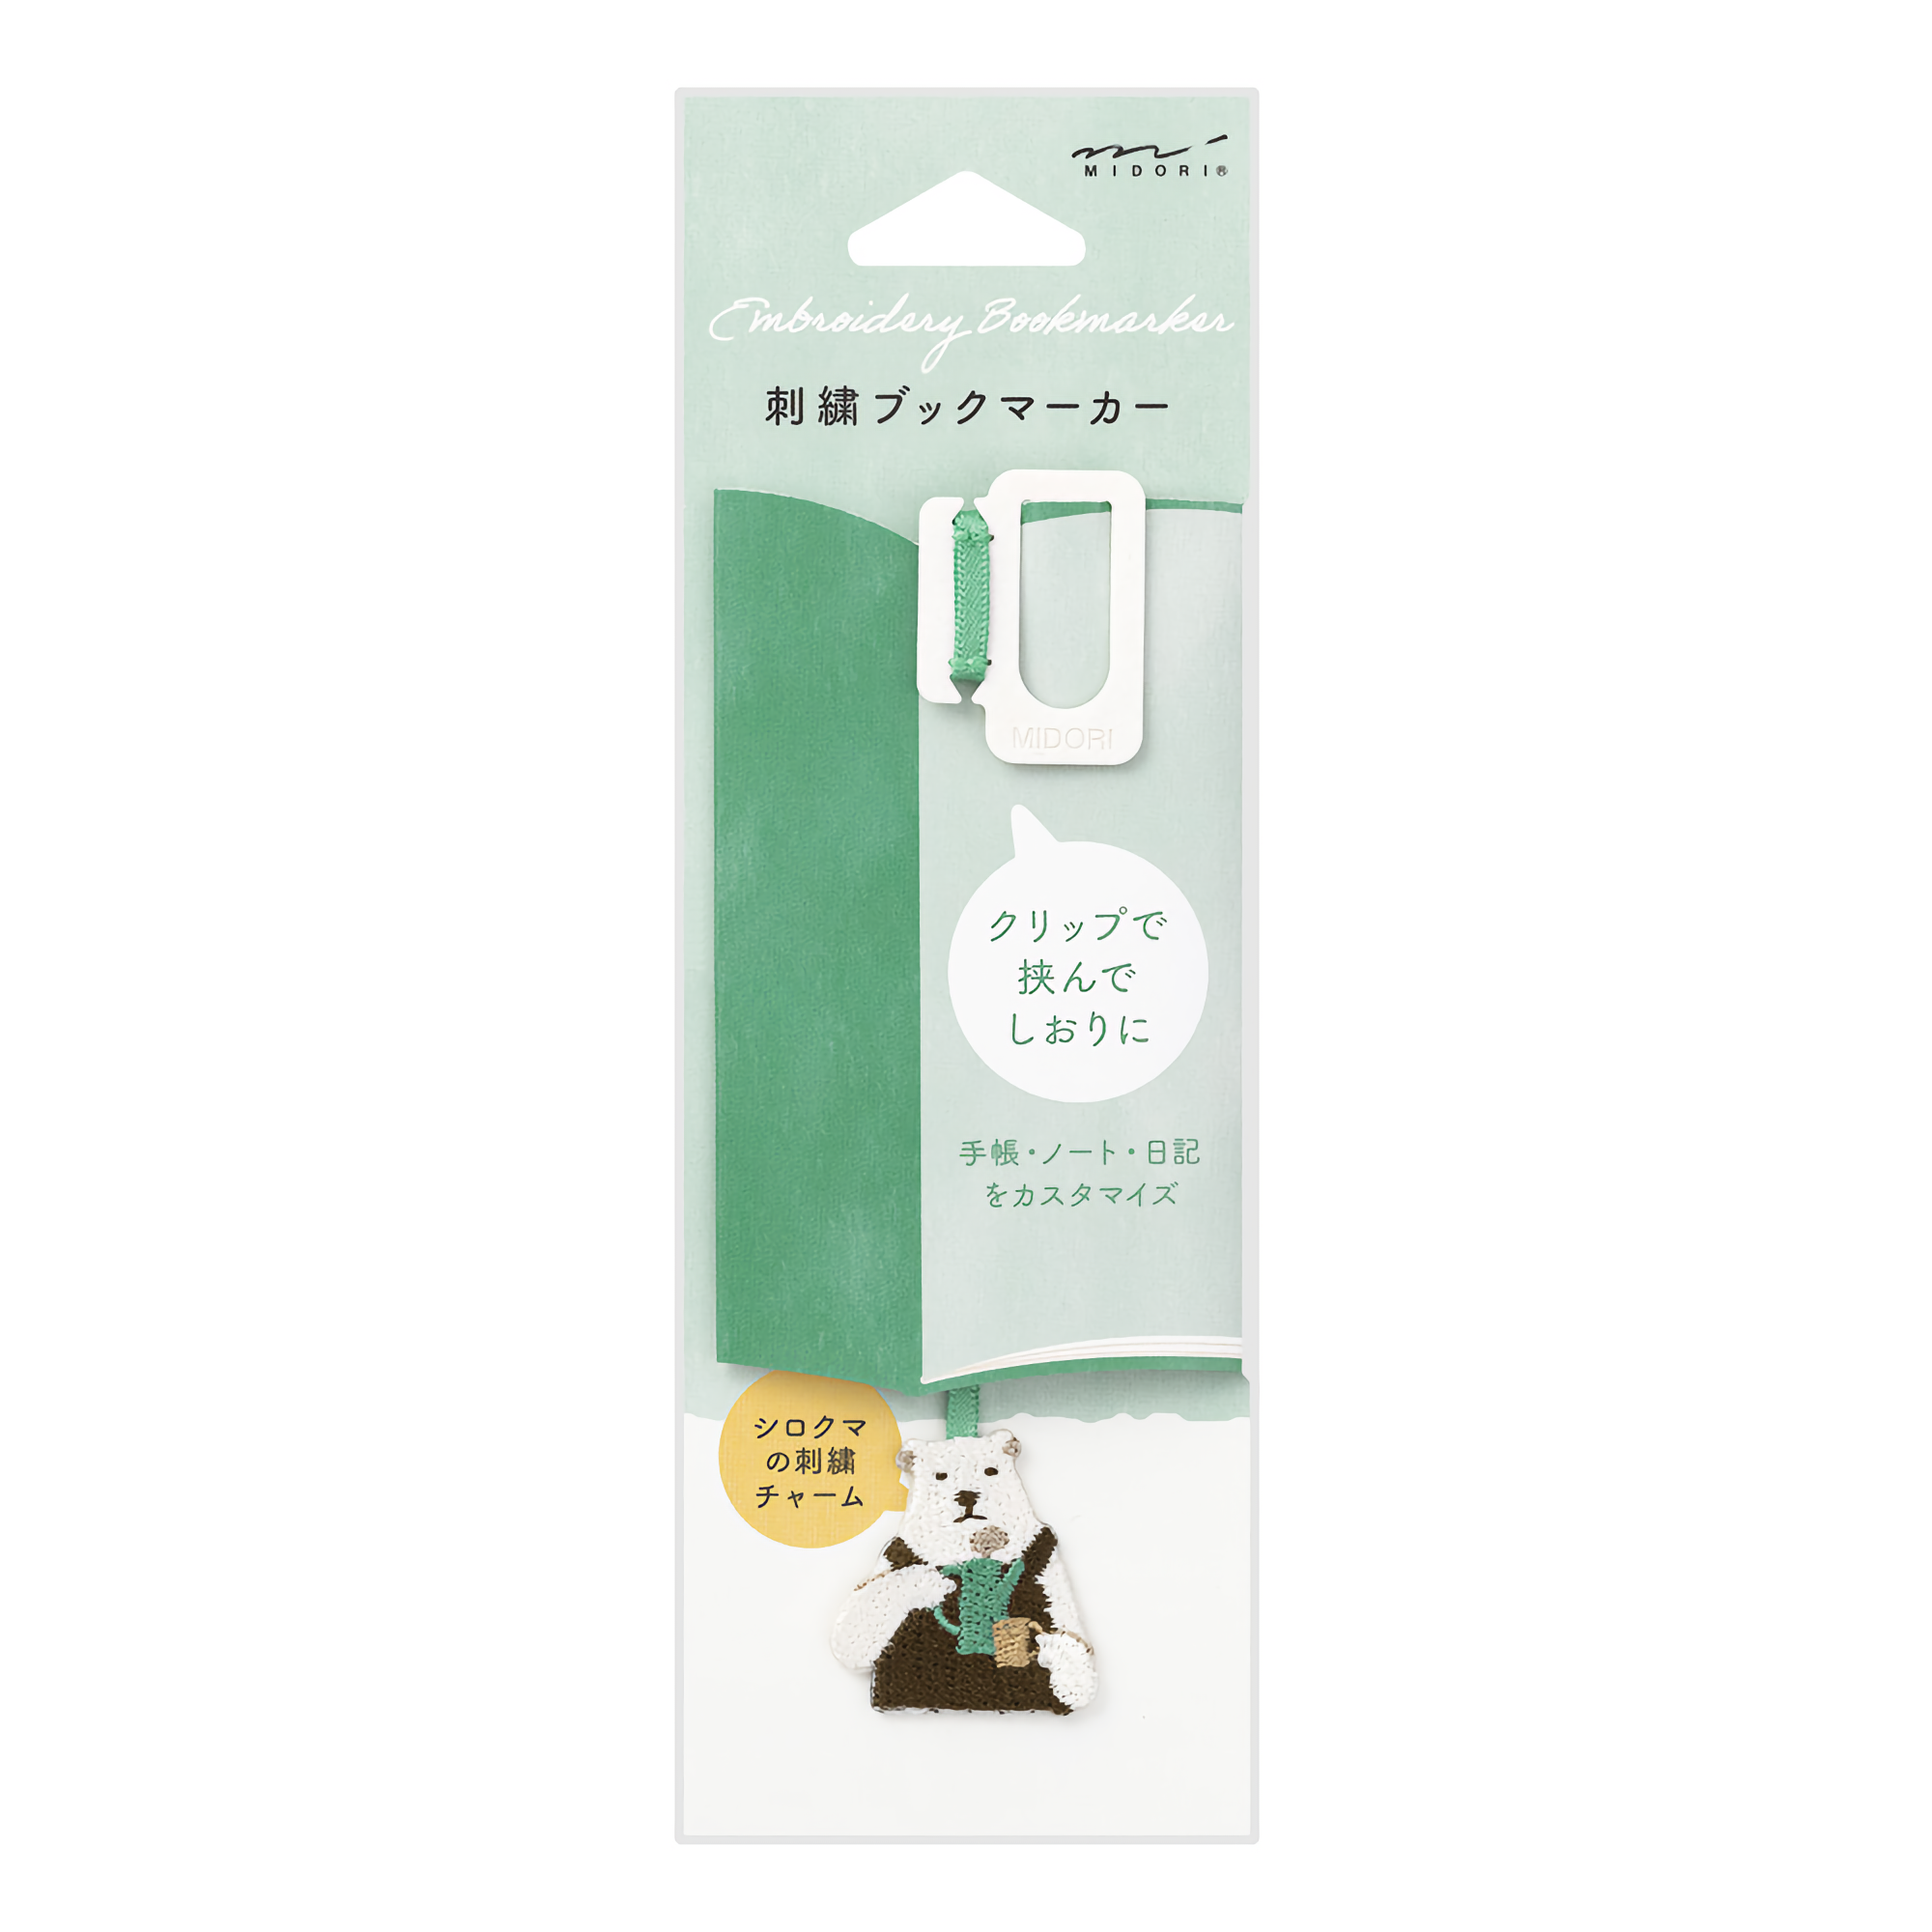 Midori Embroidery Clip Bookmark Polar Bear